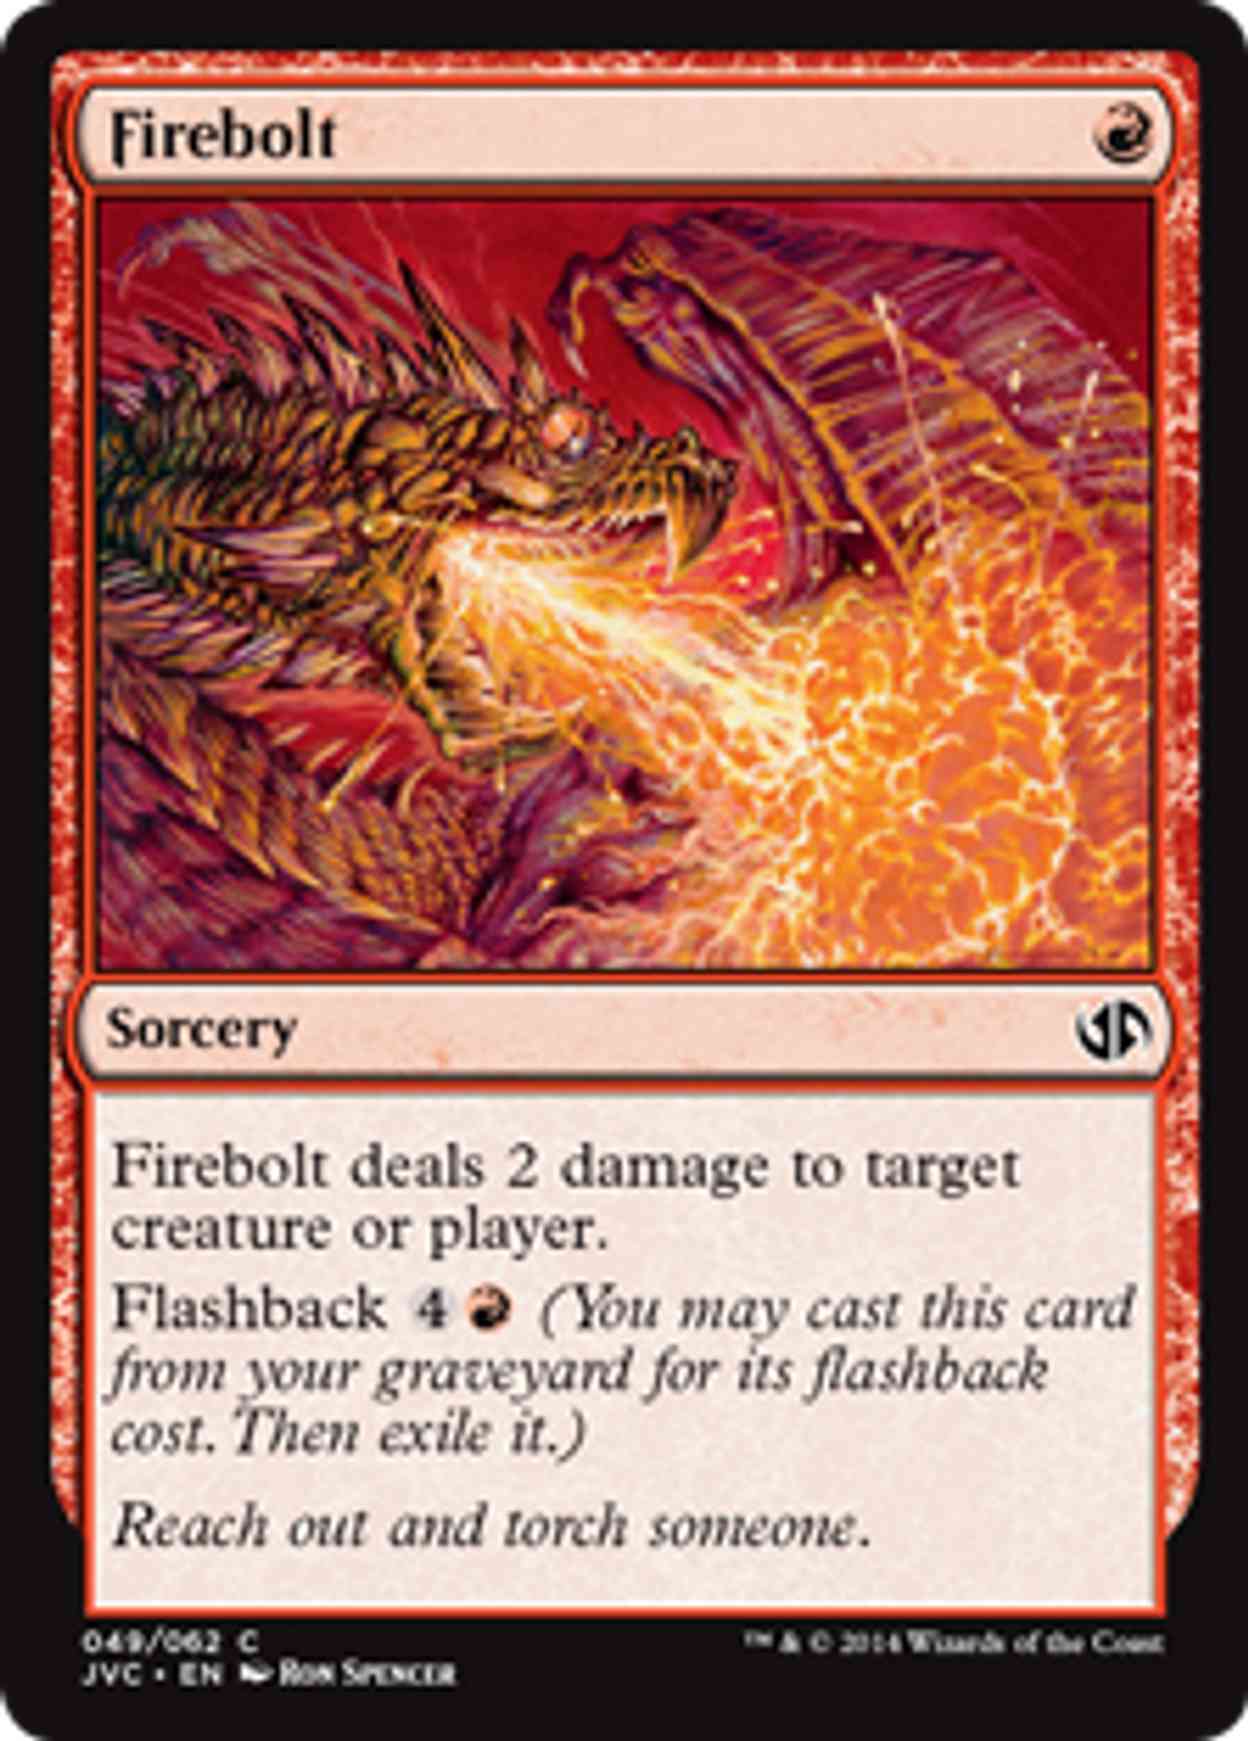 Firebolt magic card front